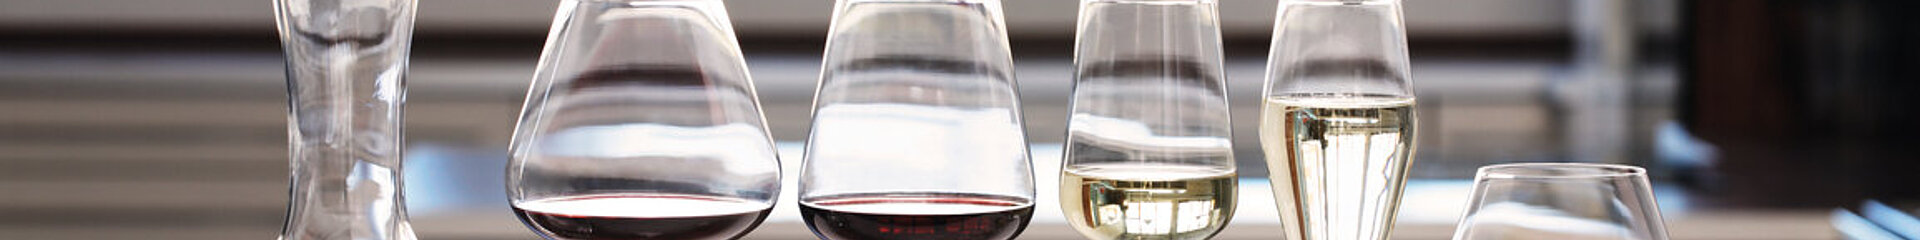 Čaša za vino Burgundy, Hybrid - Spiegelau